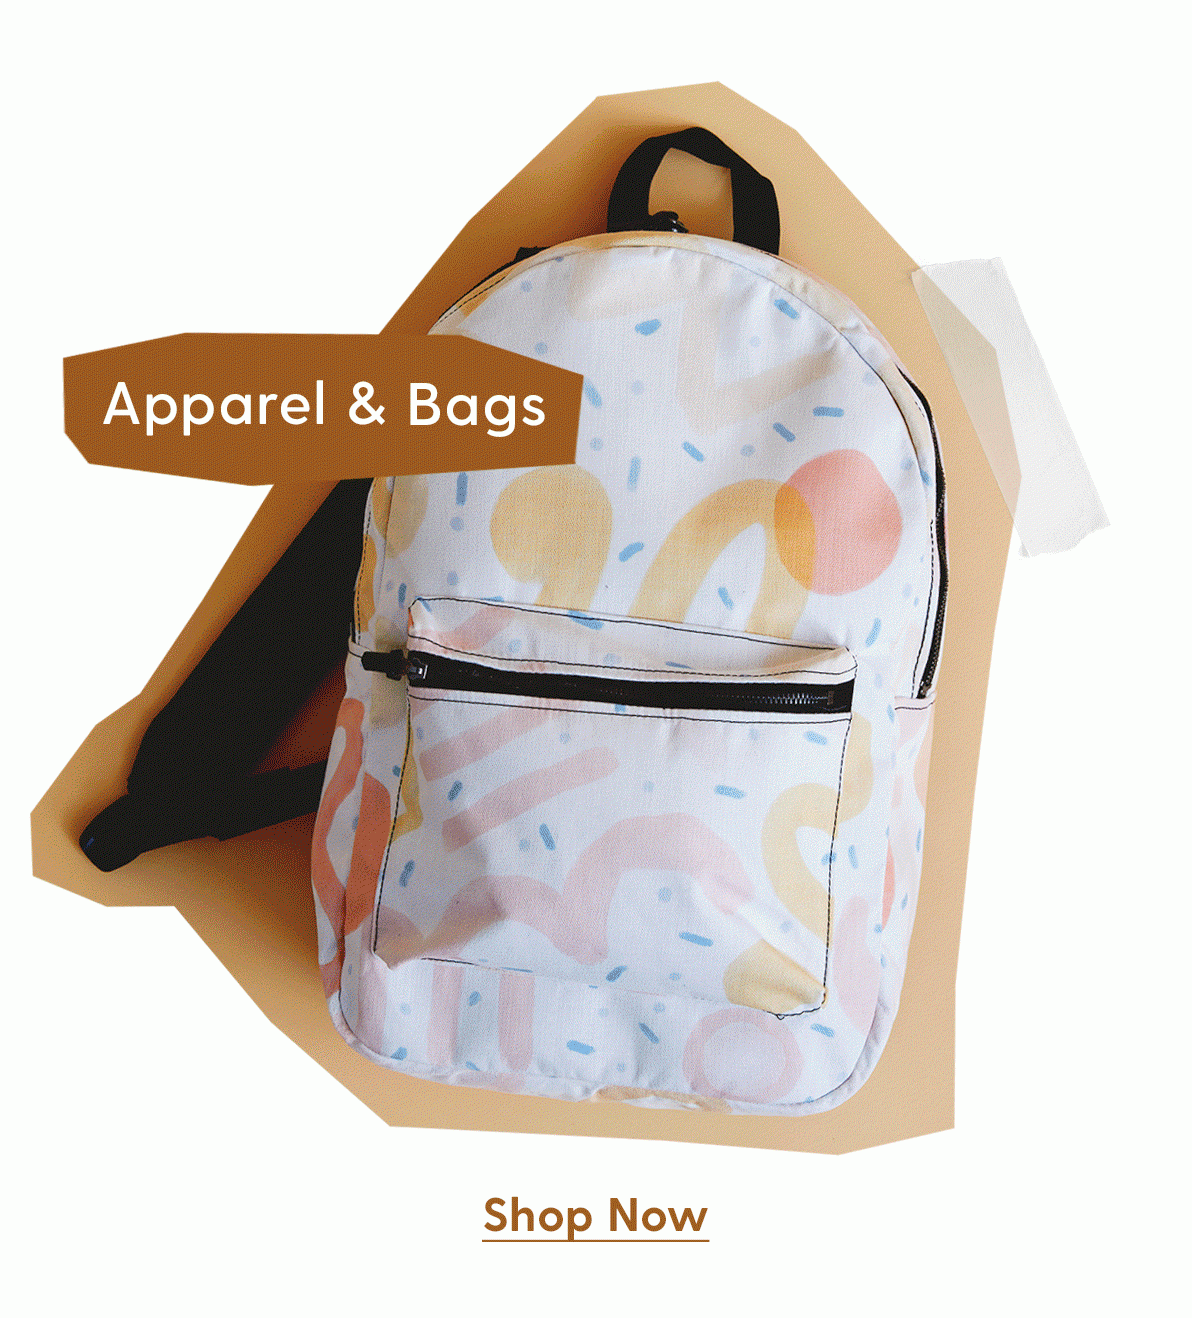 Apparel & Bags Shop Now